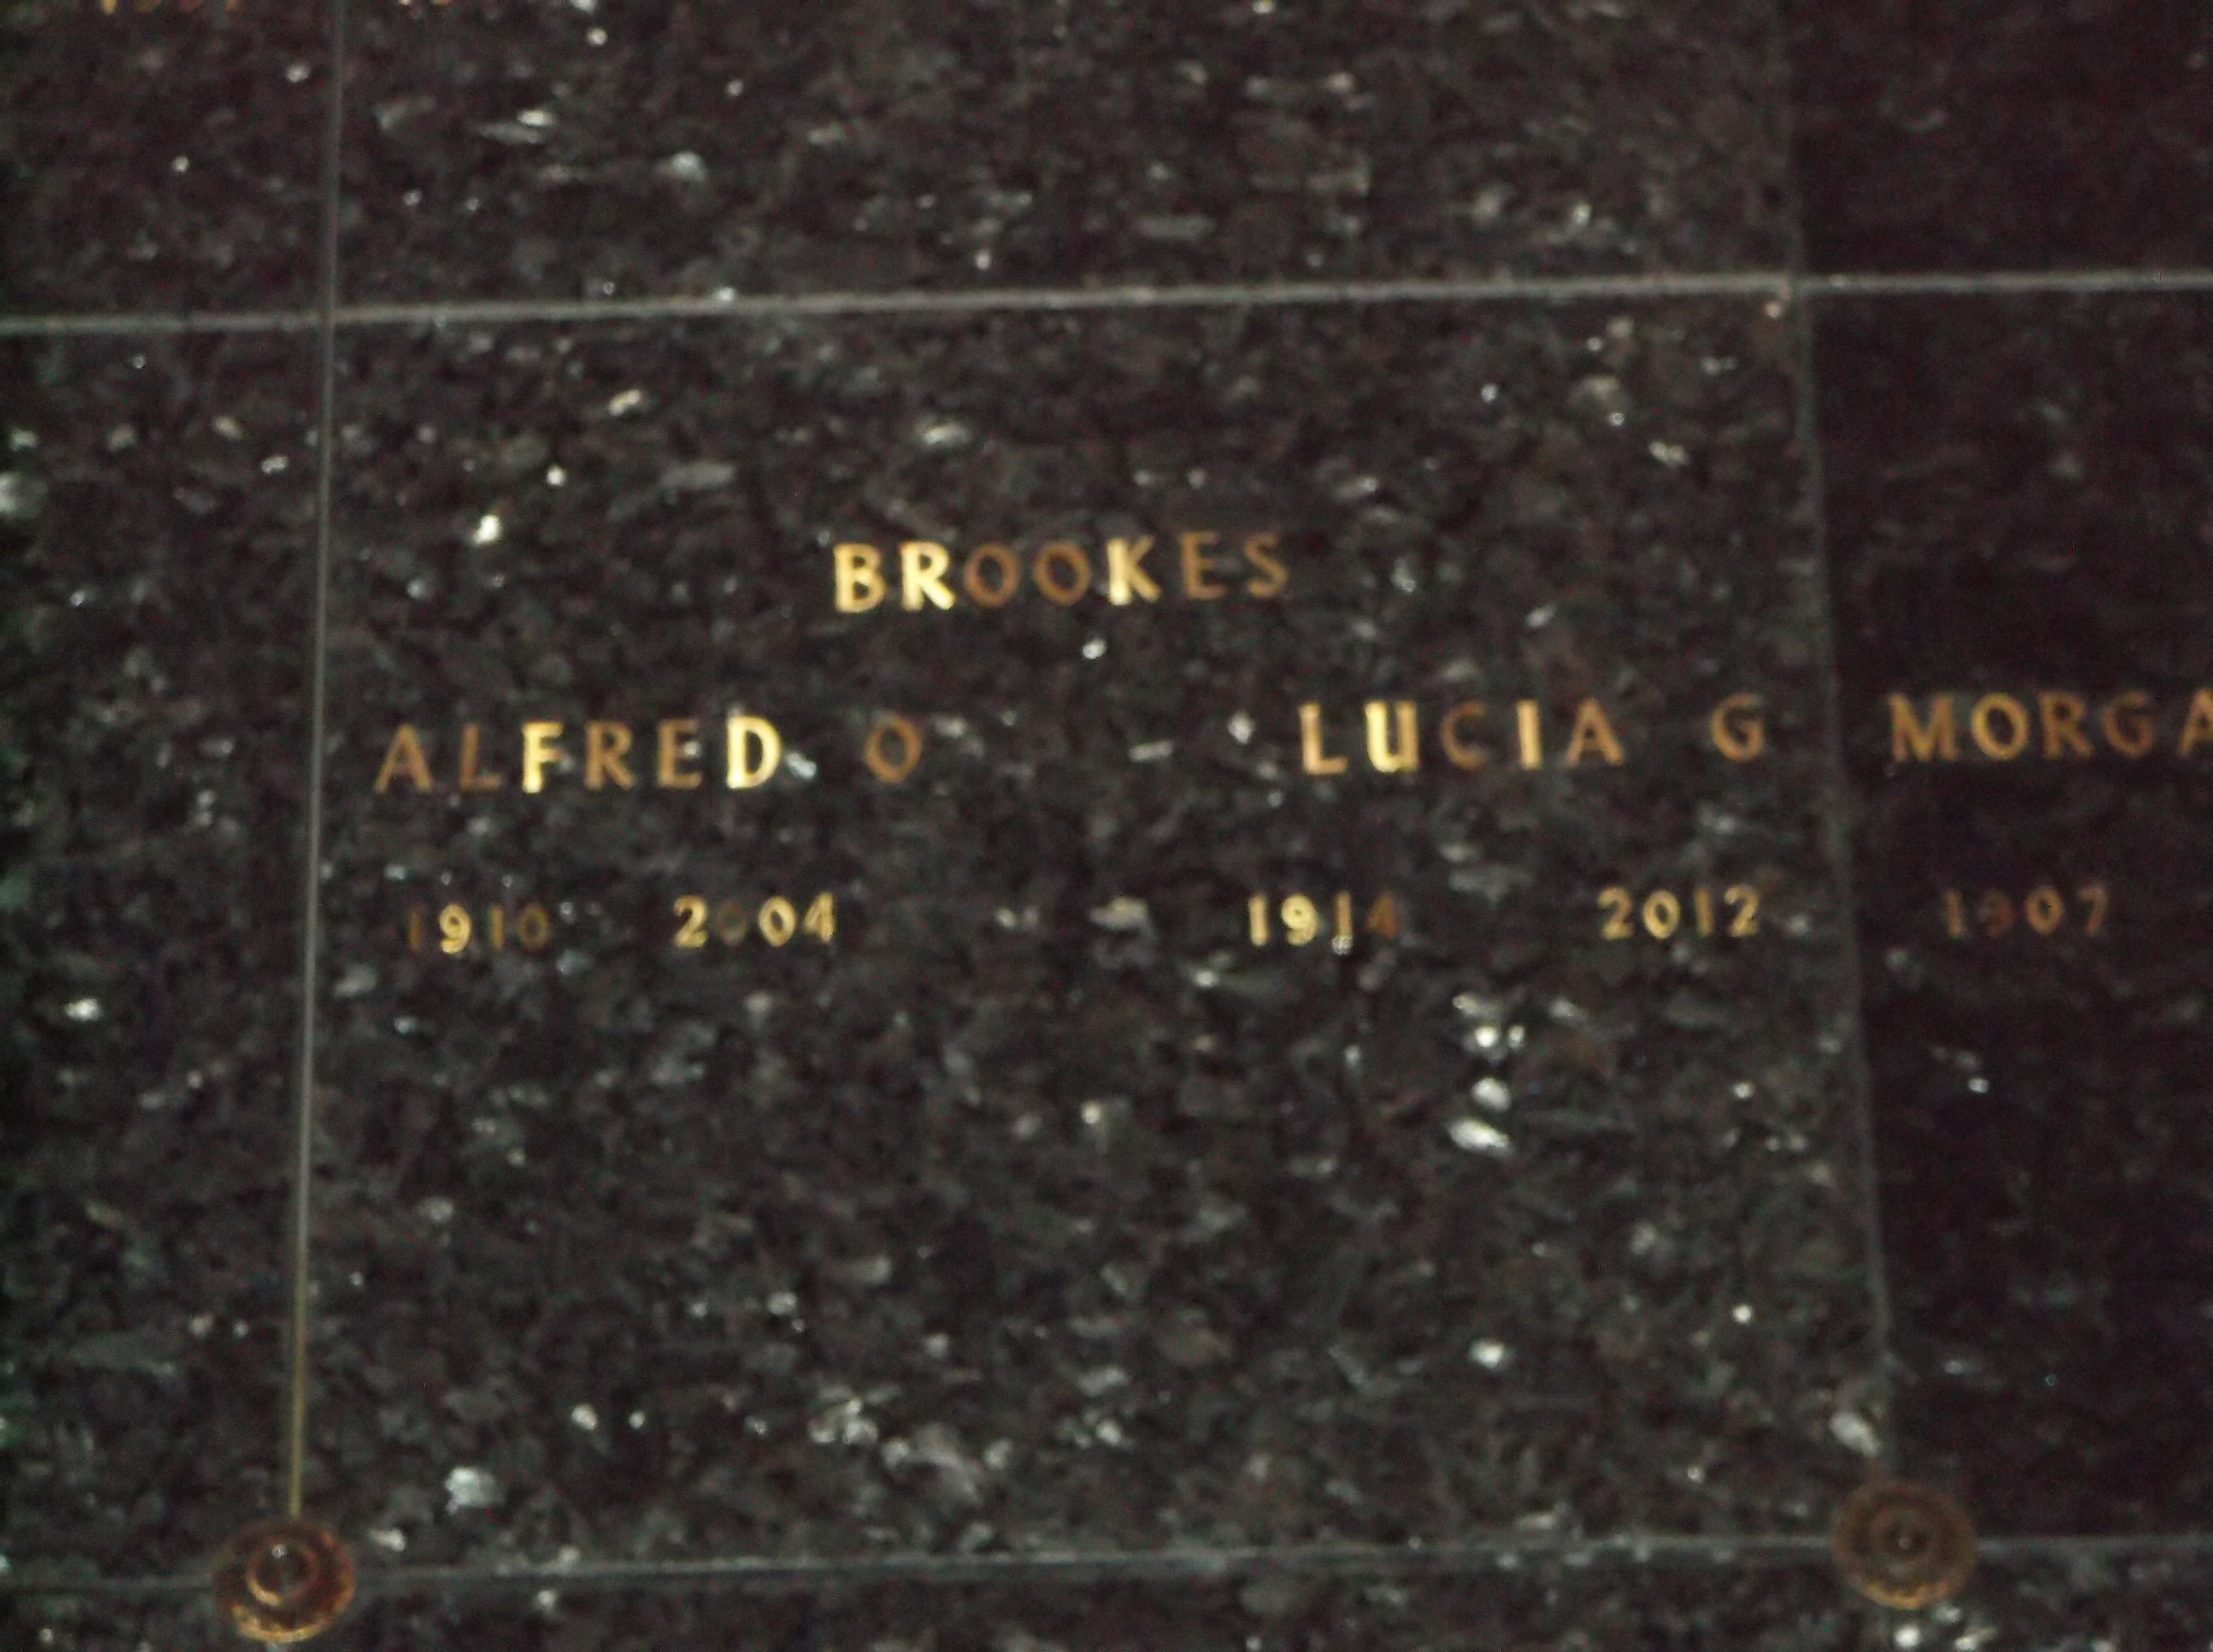 Alfred O Brookes